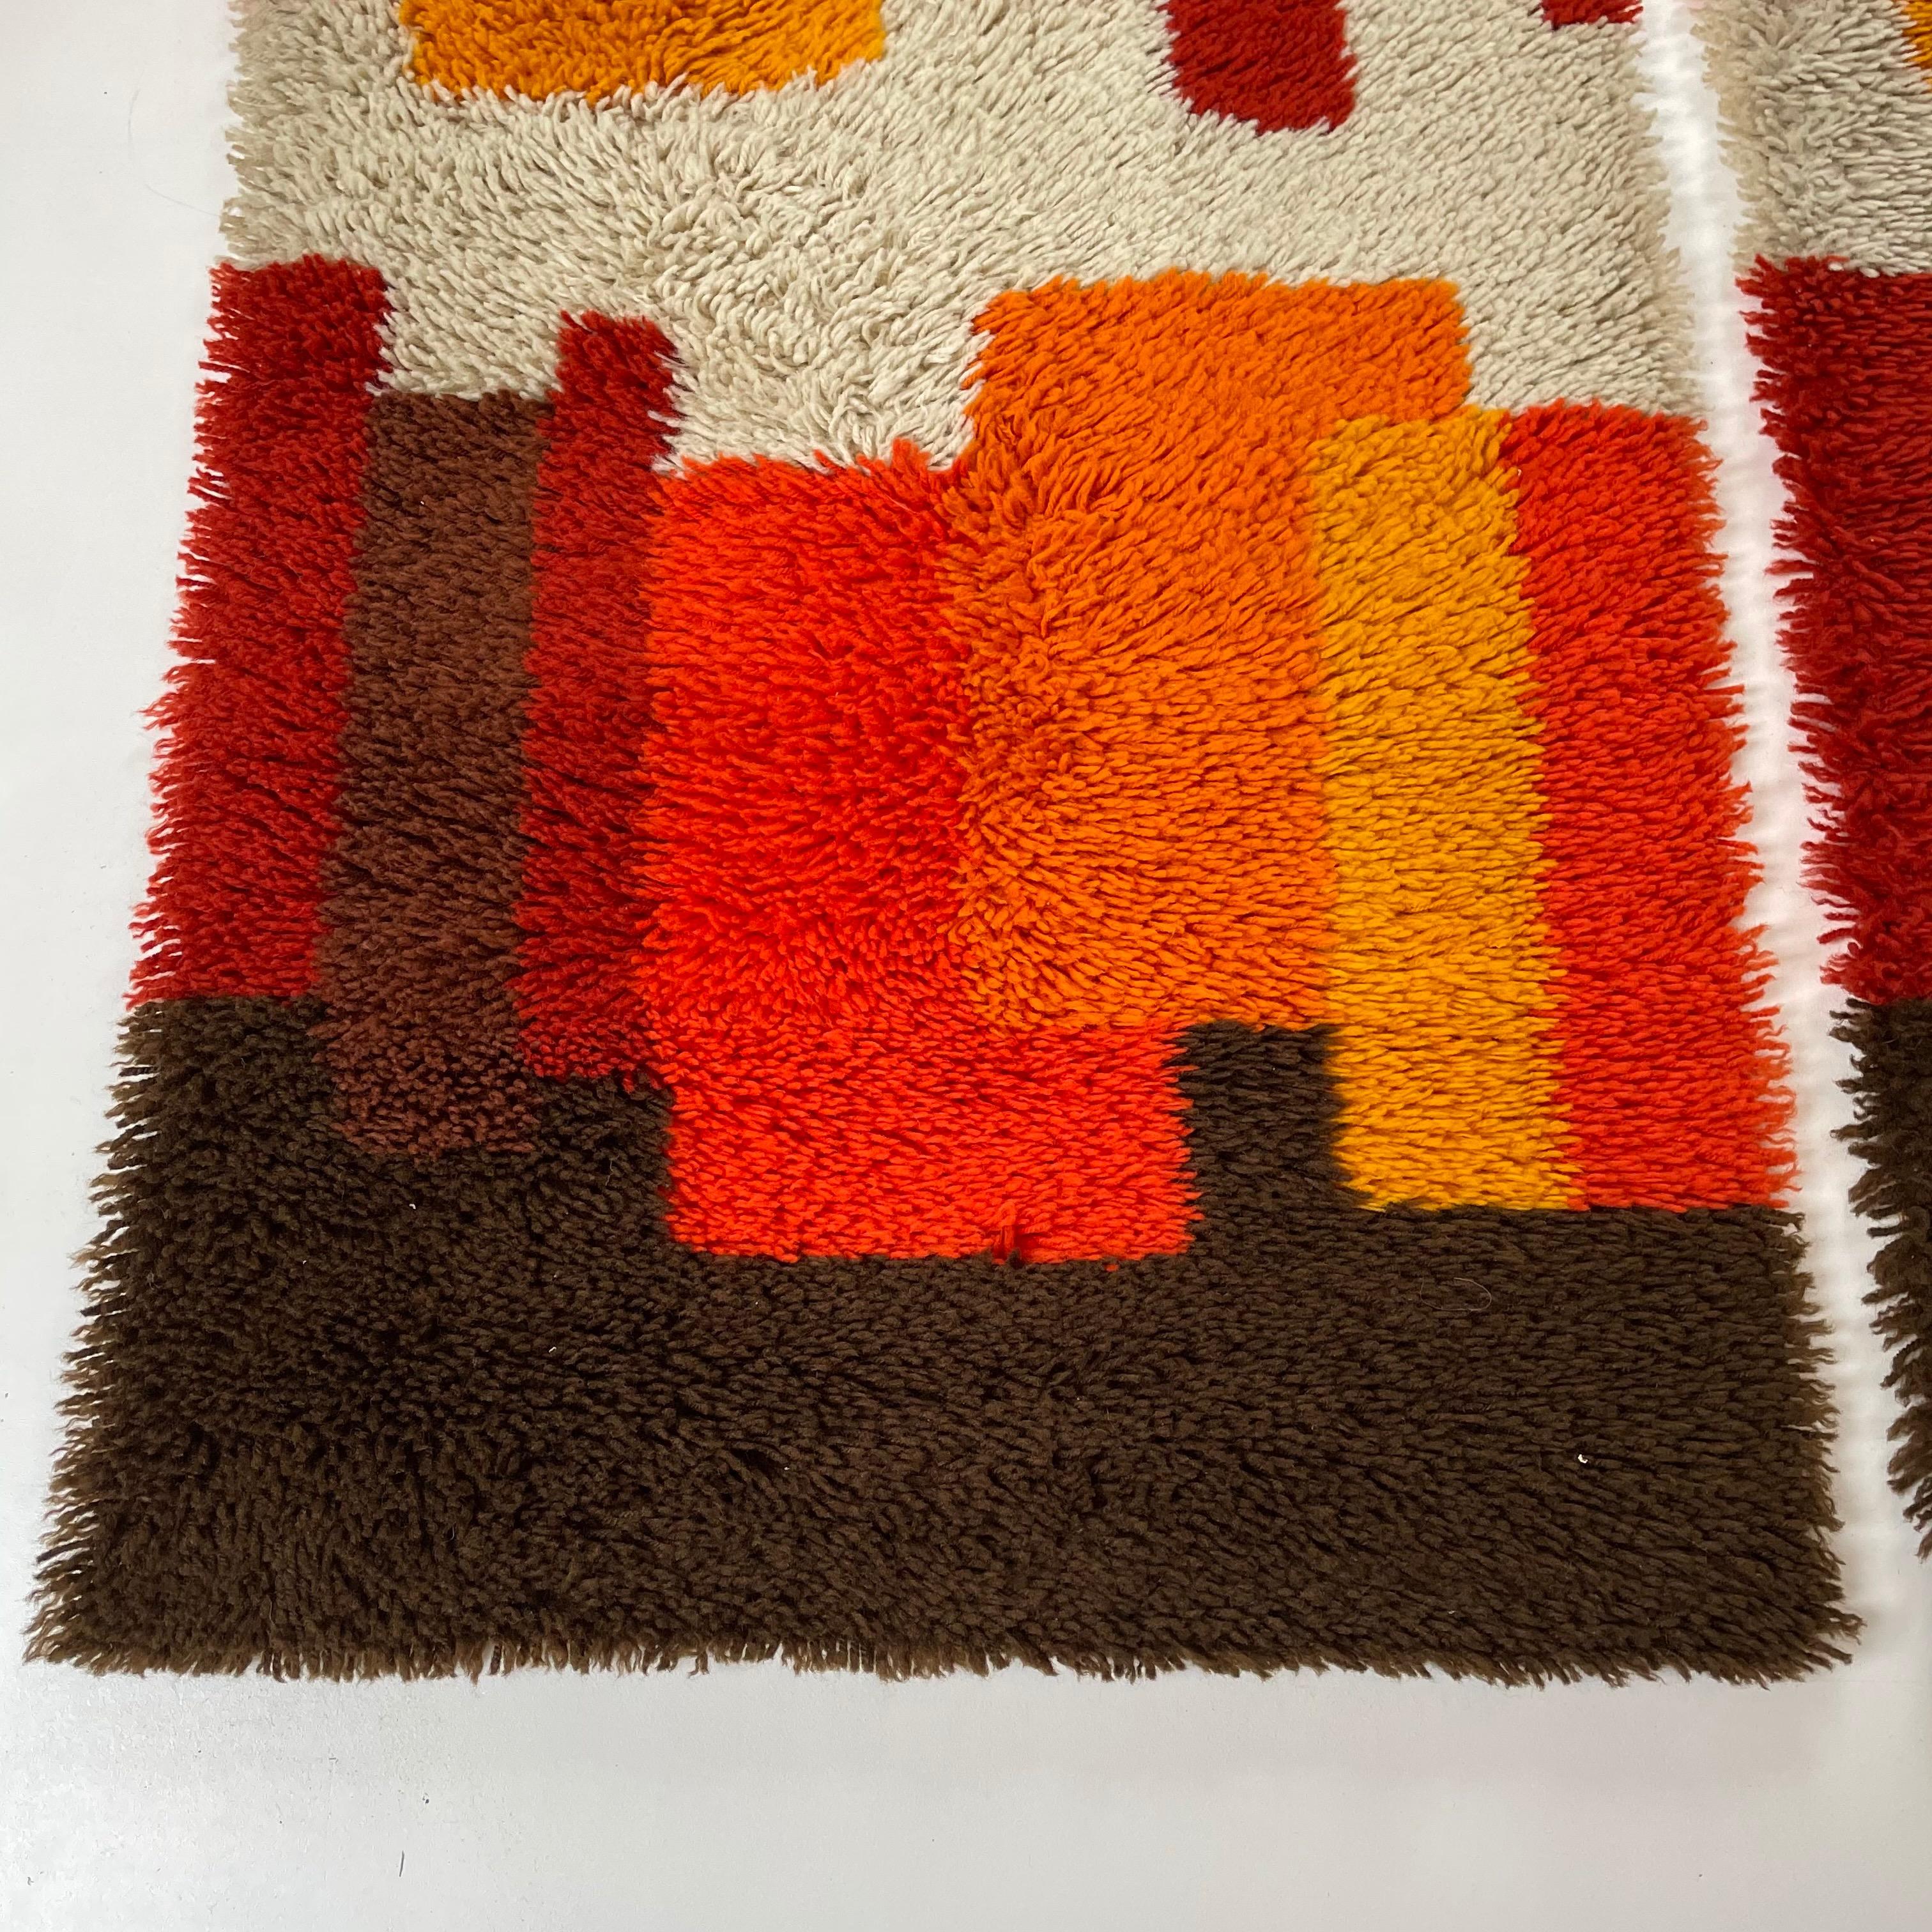 Hochflorige Teppiche mit Pop-Art-Muster im 2er-Set.


Jahrzehnt:

1970s


Oigin:

Niederlande


Produzent:

Desso, Niederlande



Dieses Teppichset ist ein großartiges Beispiel für ein Pop-Art-Interieur der 1970er Jahre.